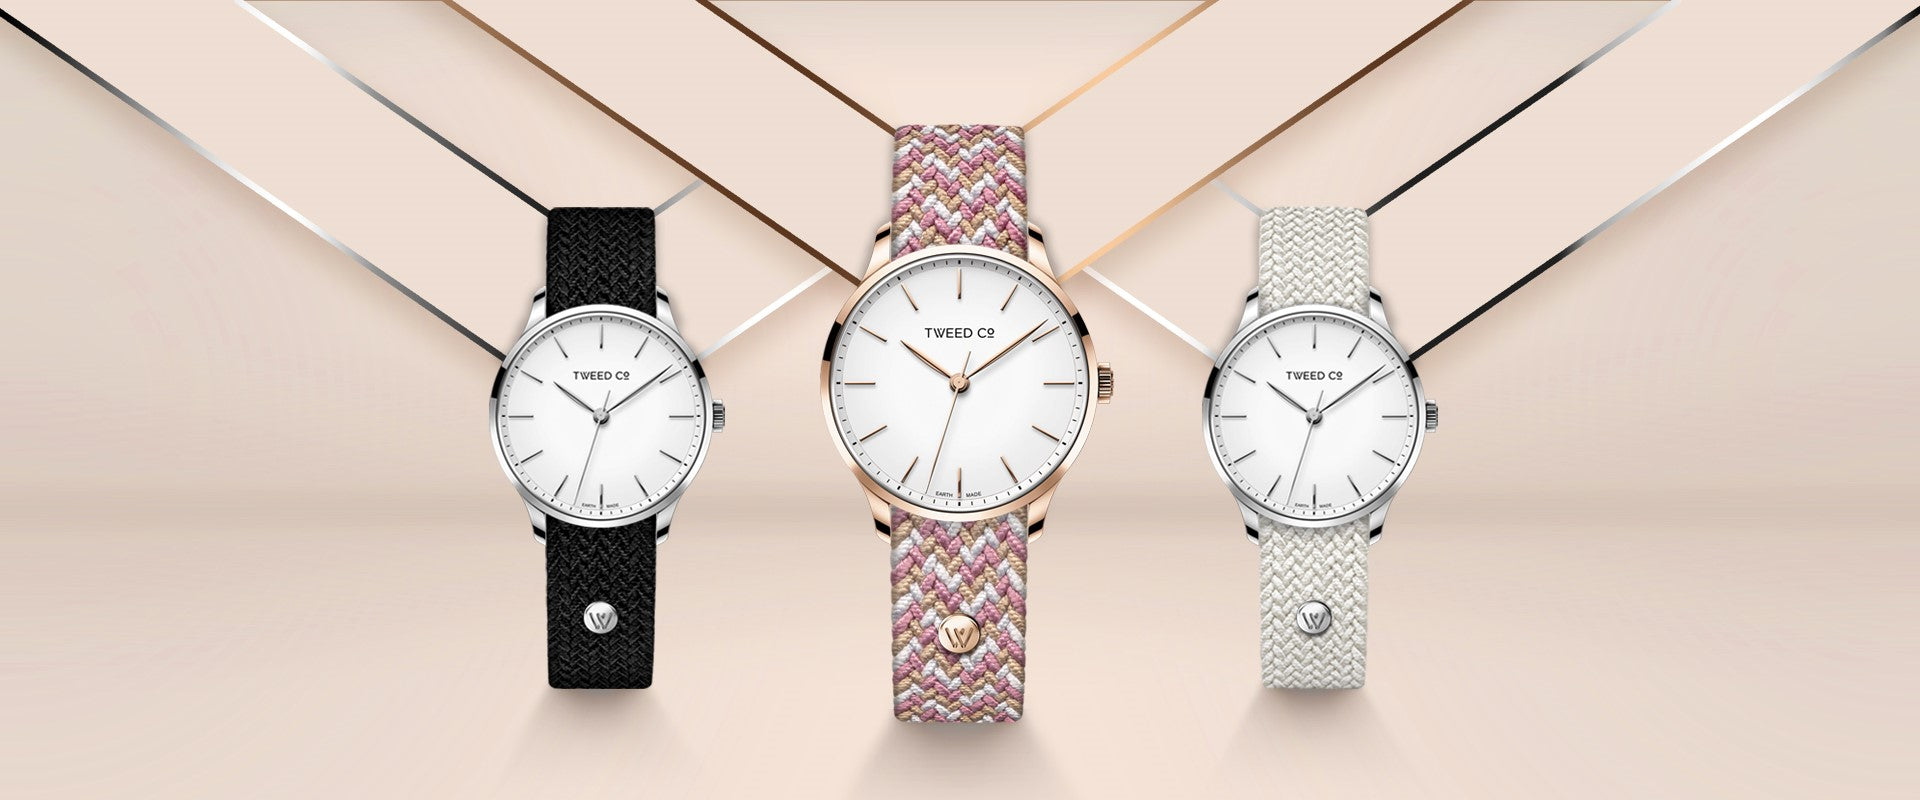 Le temps est venu de suivre le chemin tendance : Exprimez votre style avec les montres Tweed Co. pour femmes et hommes !